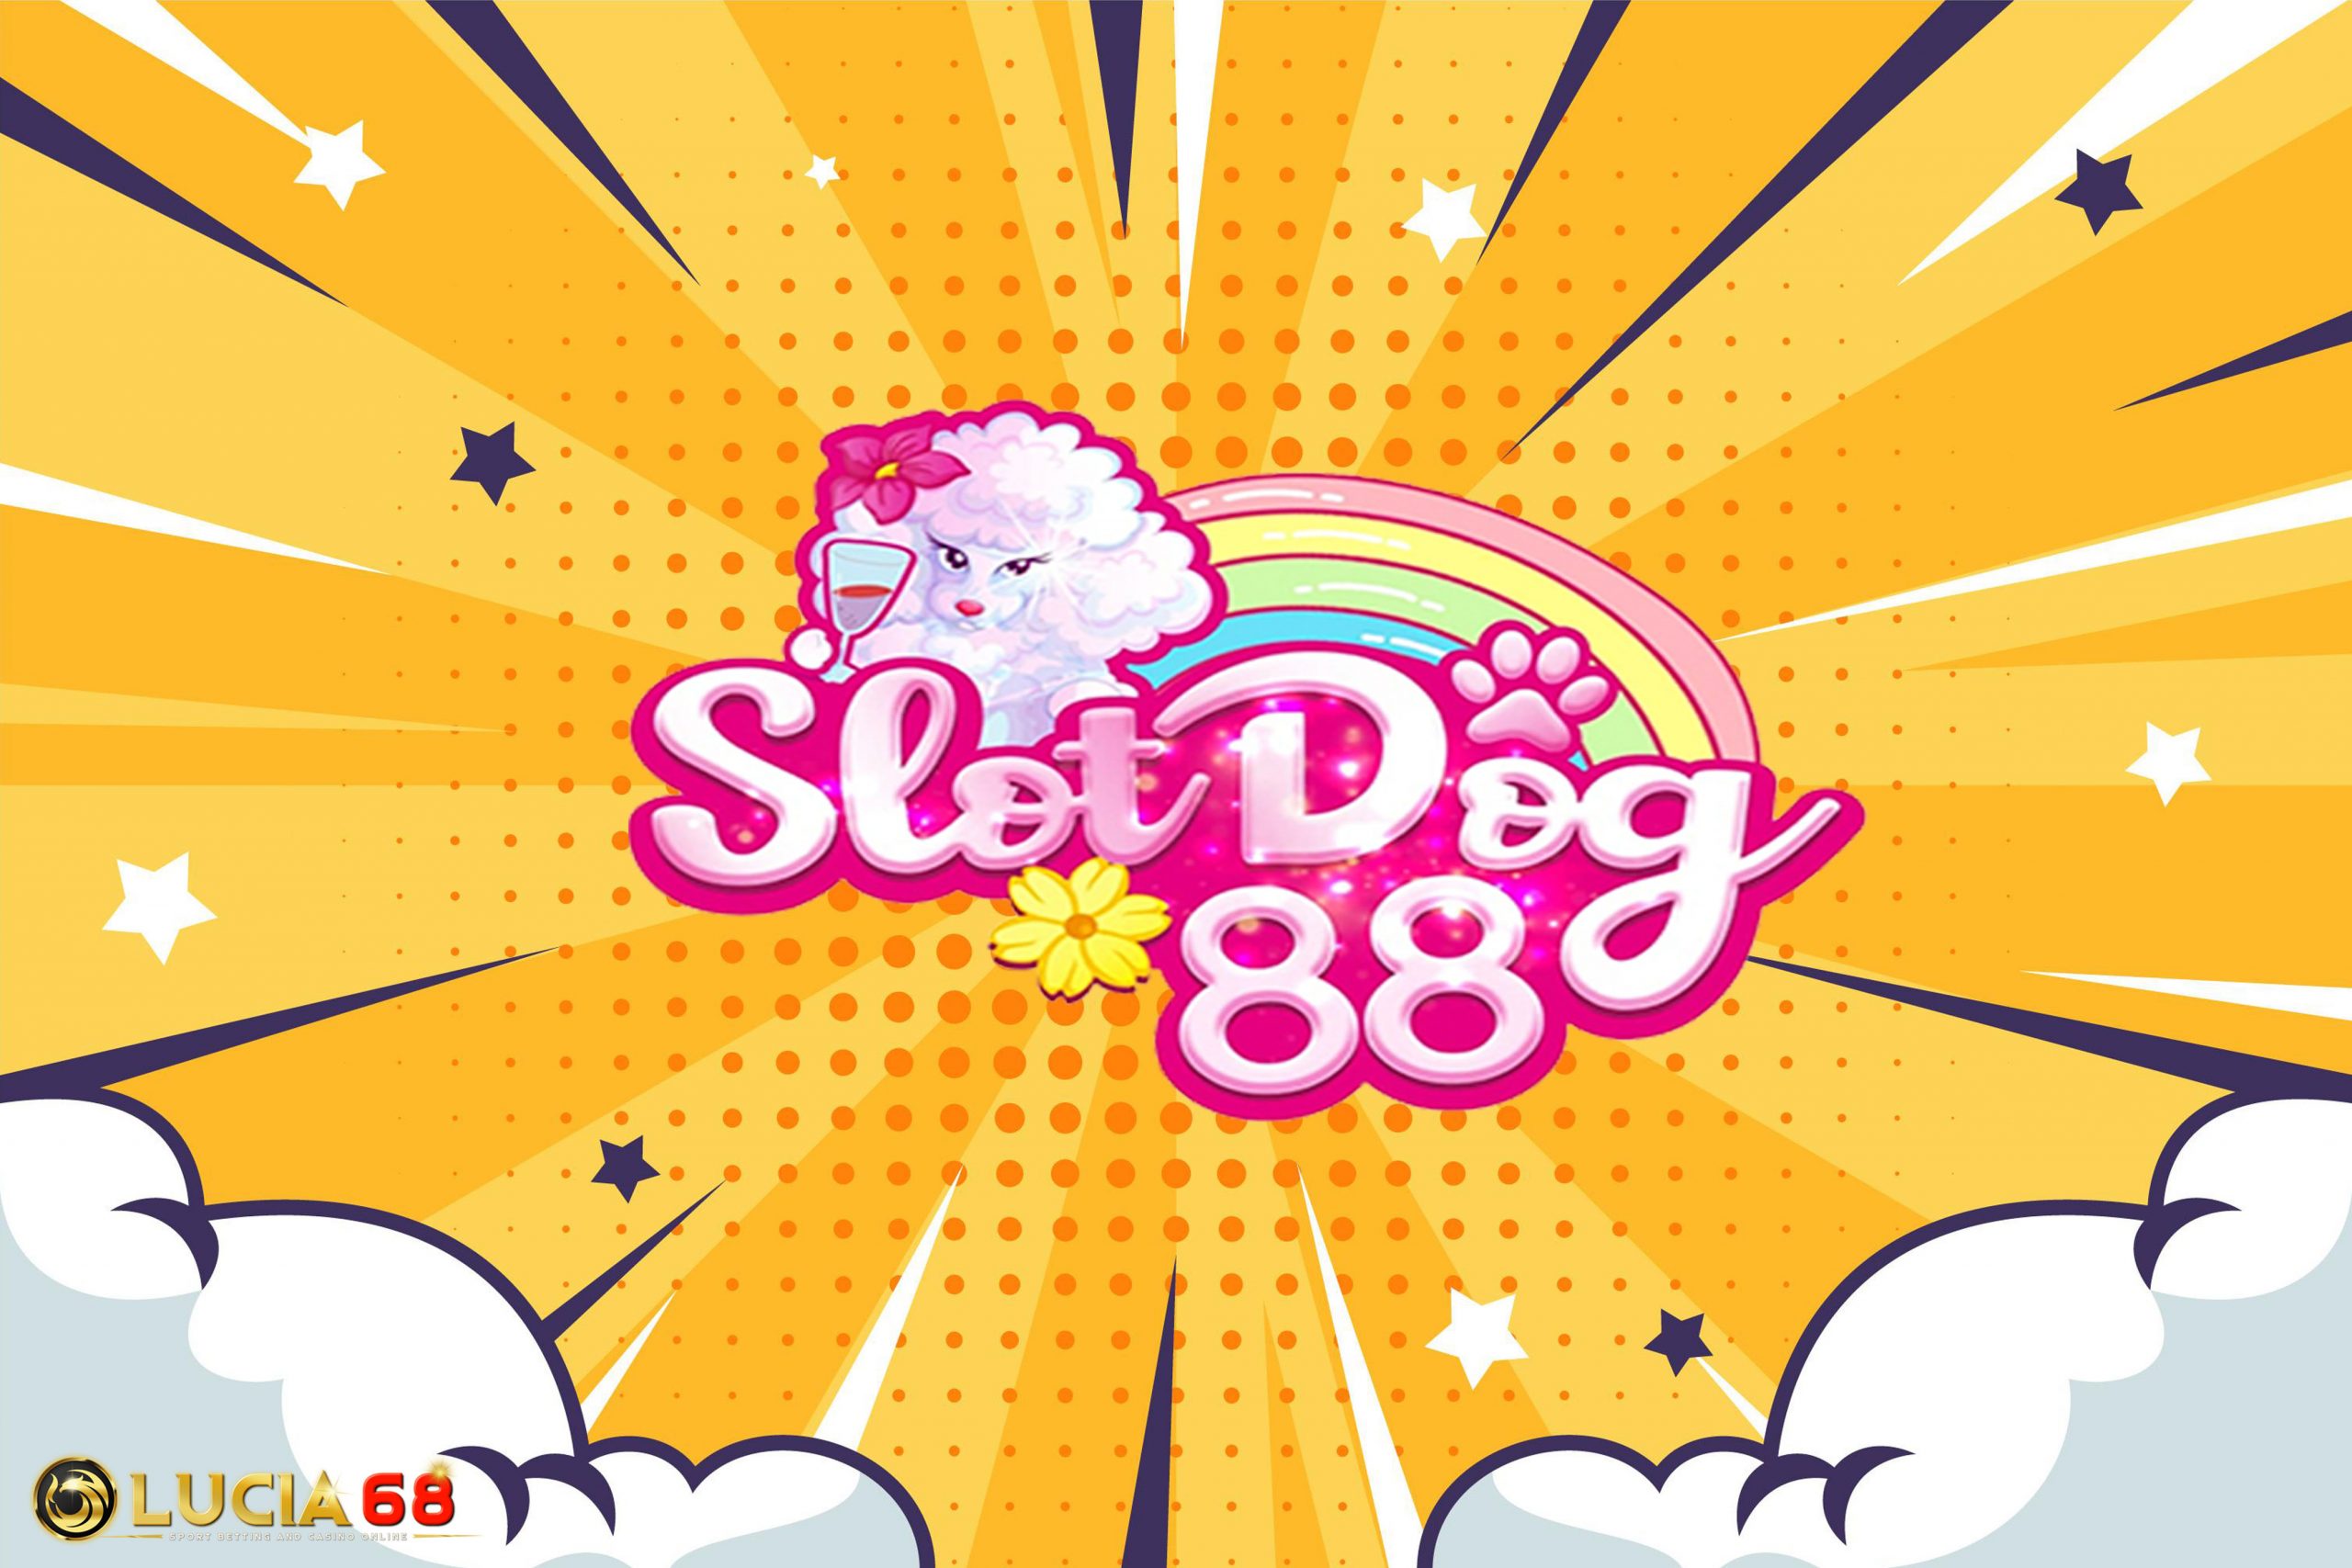 Slotdog88